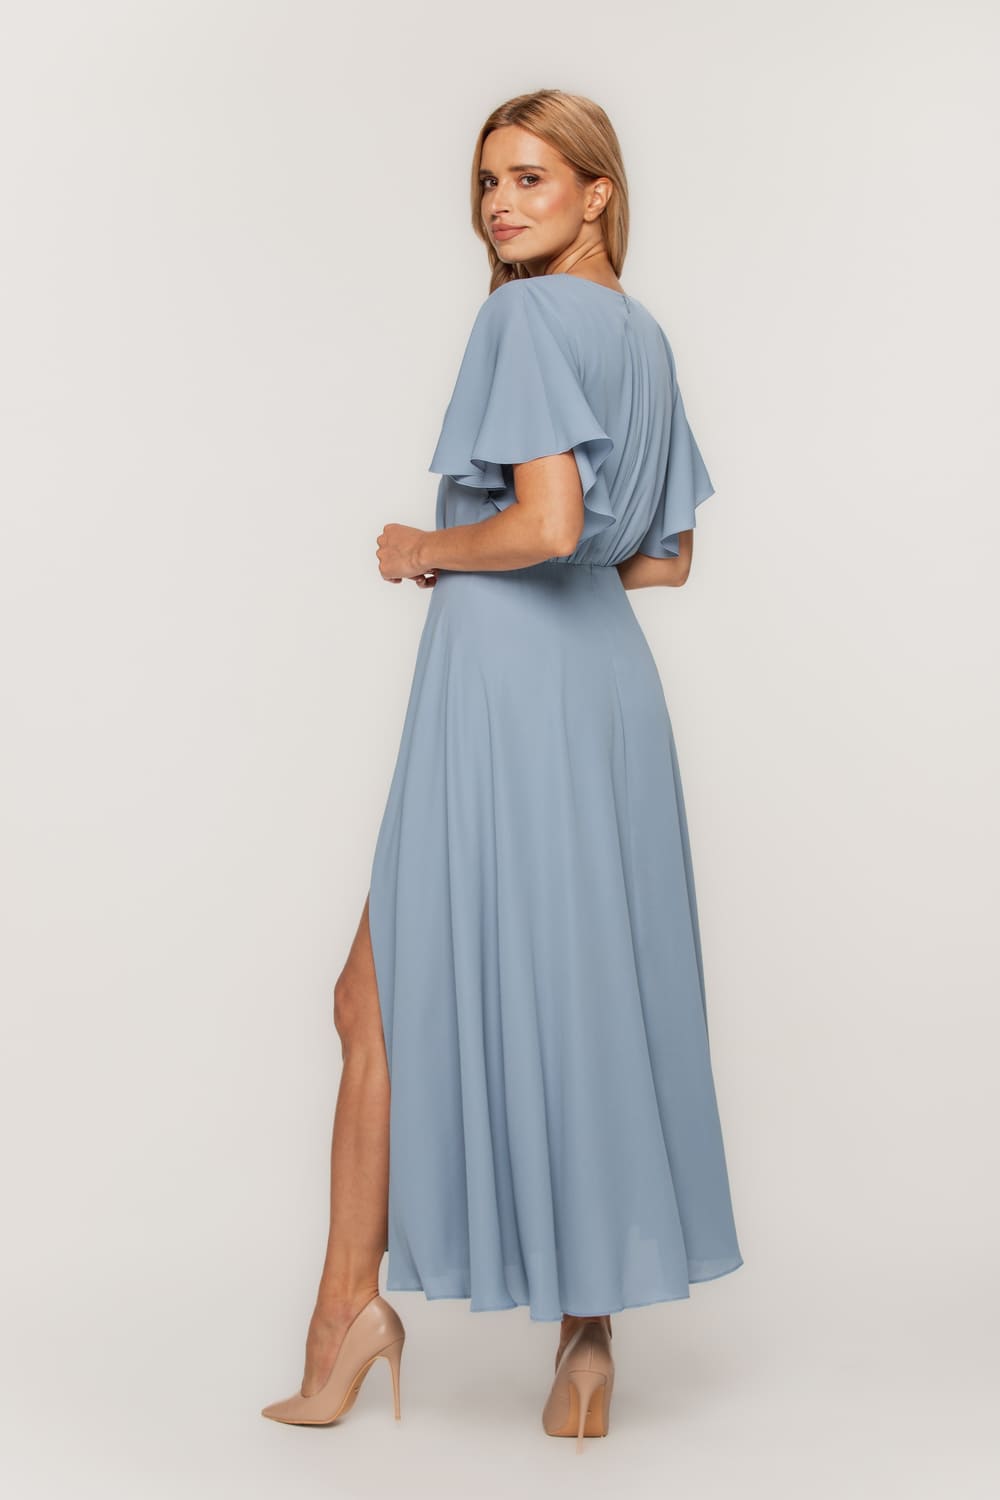 Zwiewna błękitna sukienka